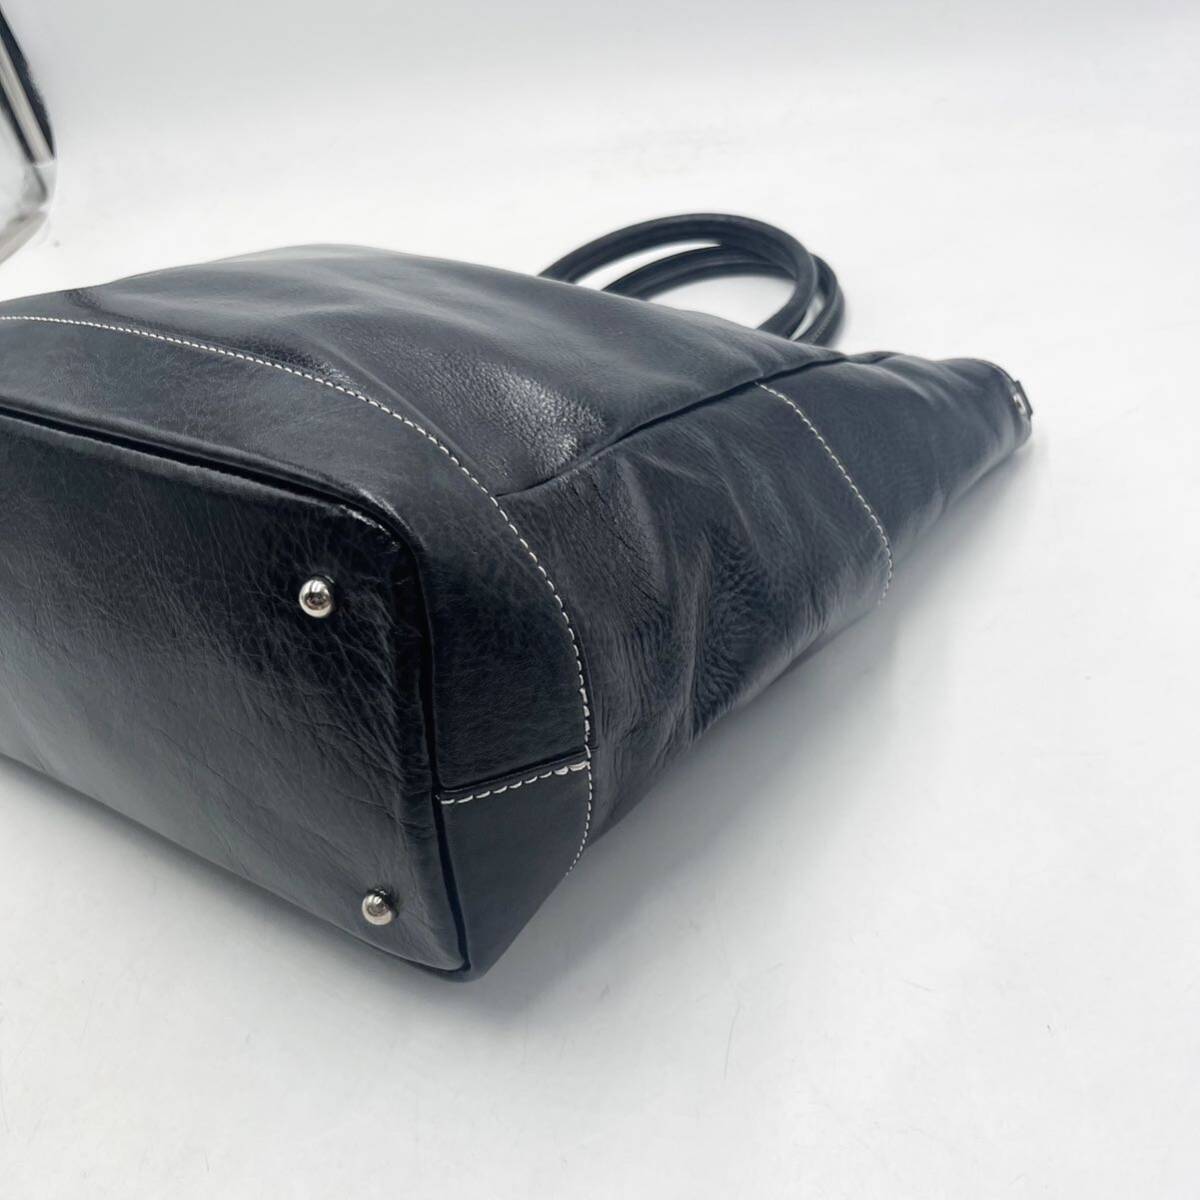 1 jpy [ new goods unused ] tote bag business bag briefcase shoulder bag leather leather black black men's lady's 